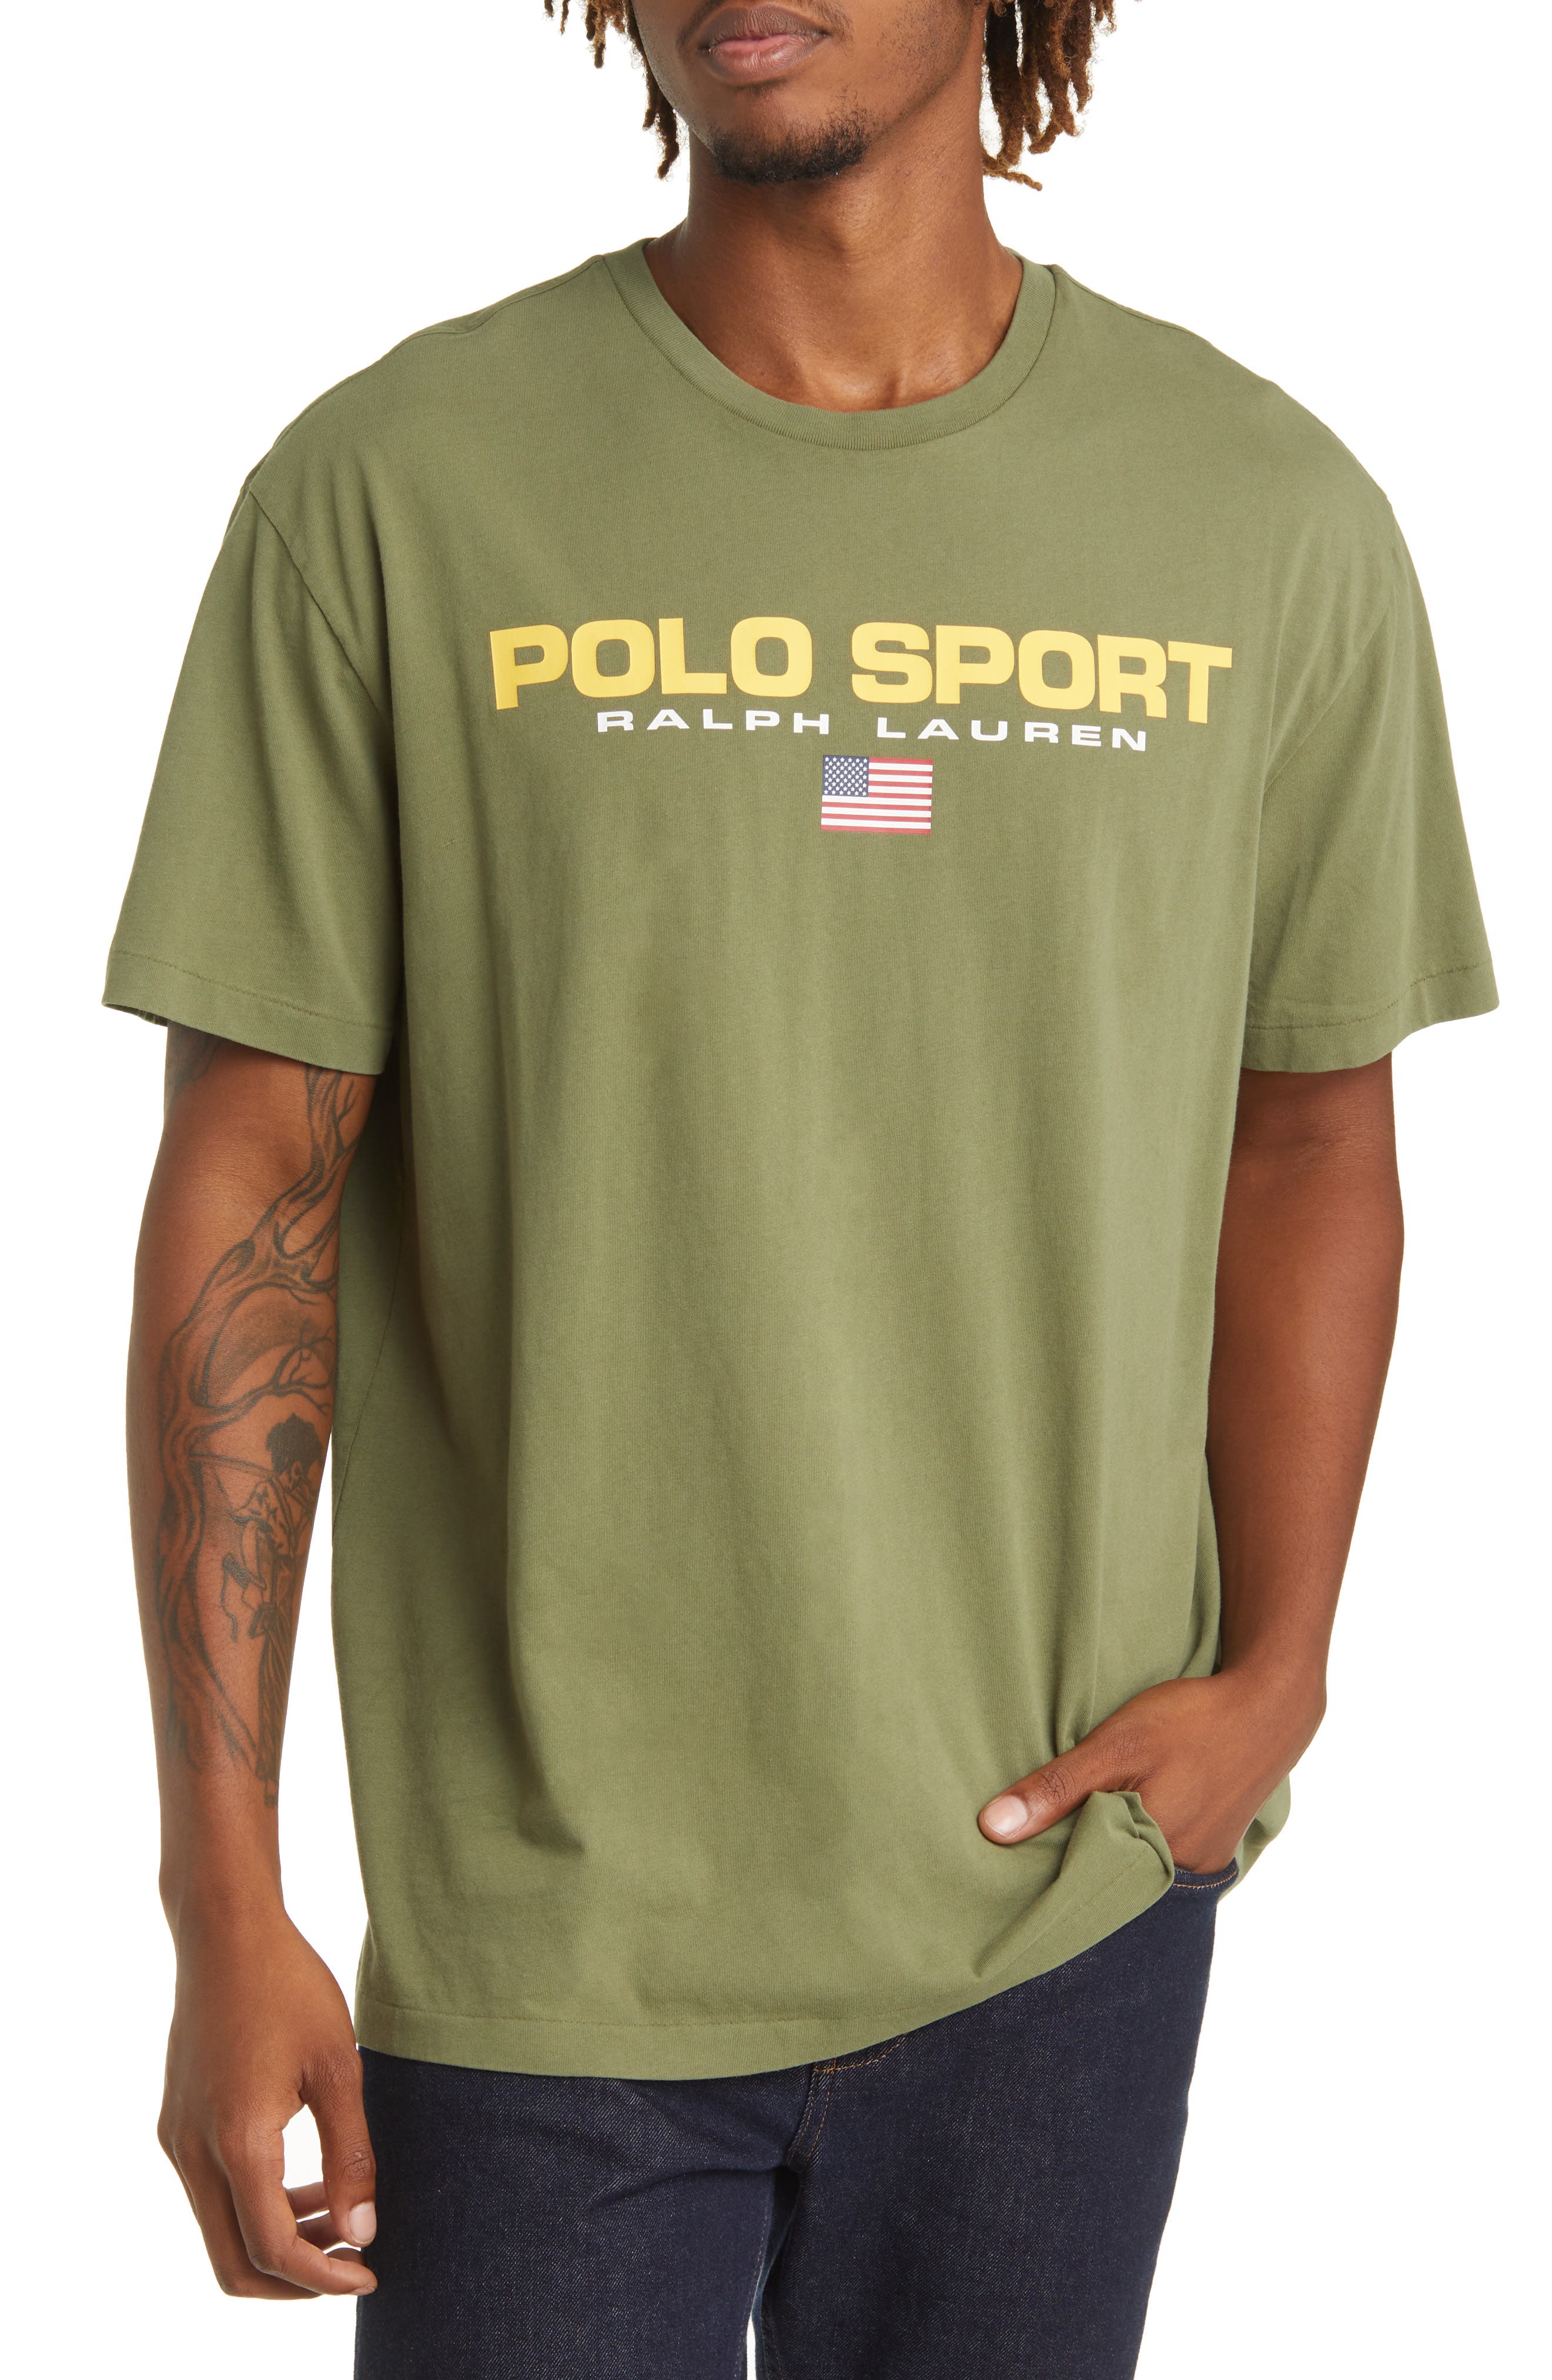 Hommes Vêtements Hauts & t-shirts T-shirts Polos Ralph Lauren Polos 8 t-shirt ralph louren 